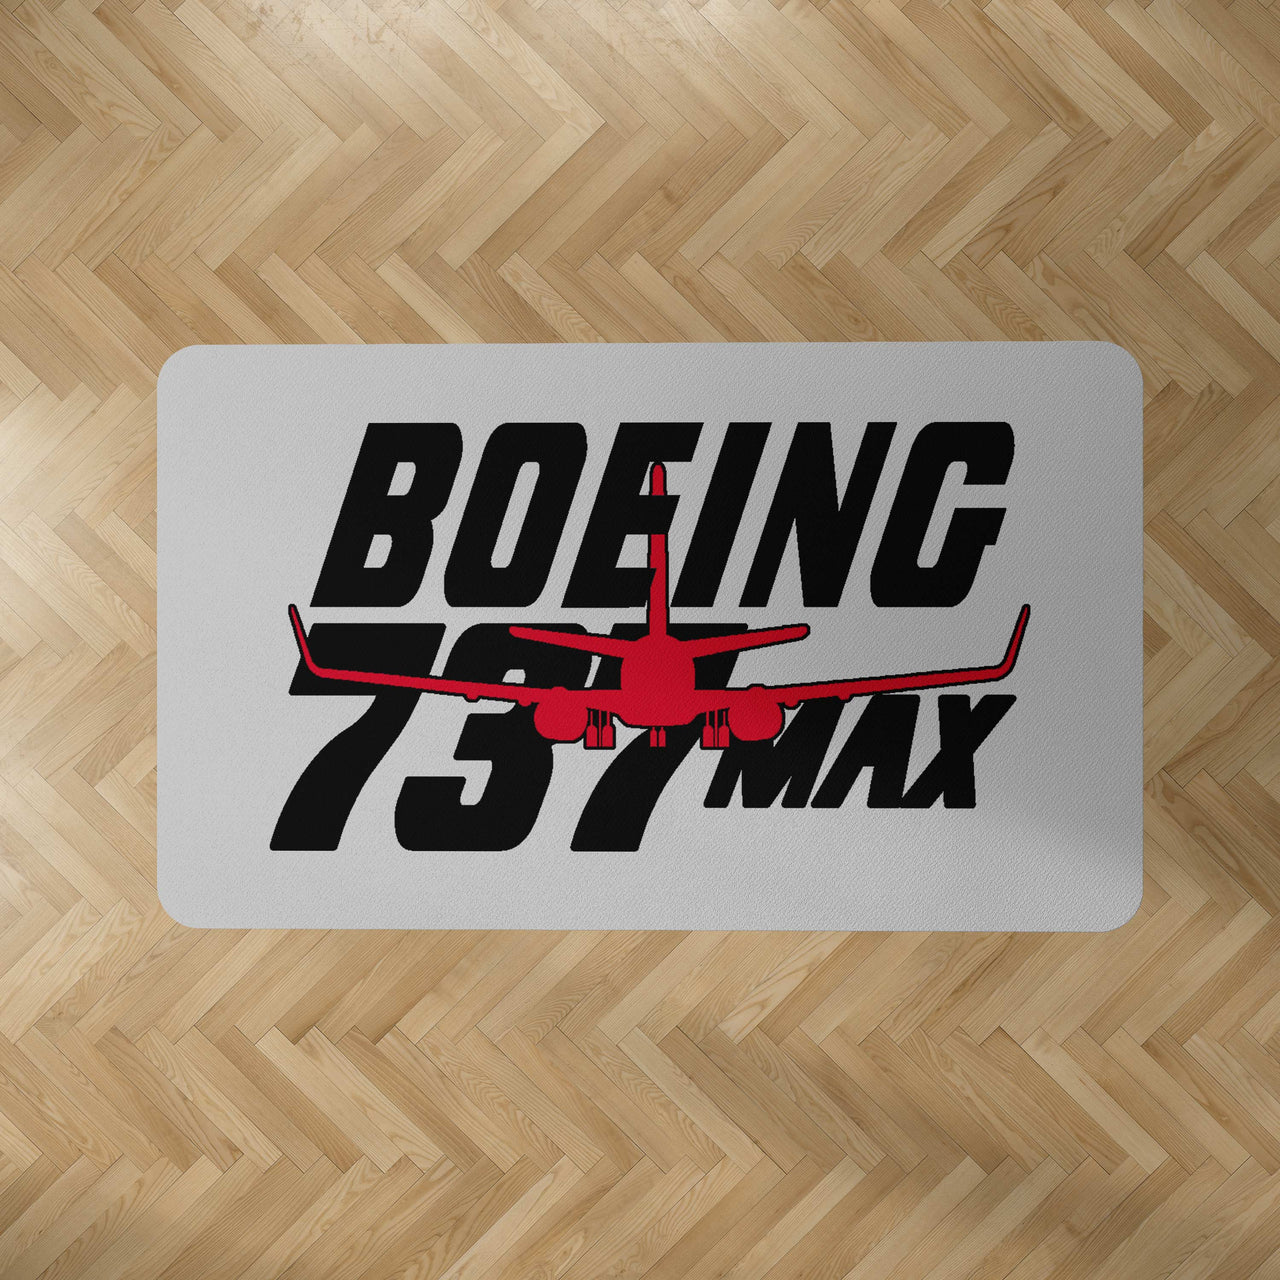 Amazing Boeing 737 Max Designed Carpet & Floor Mats